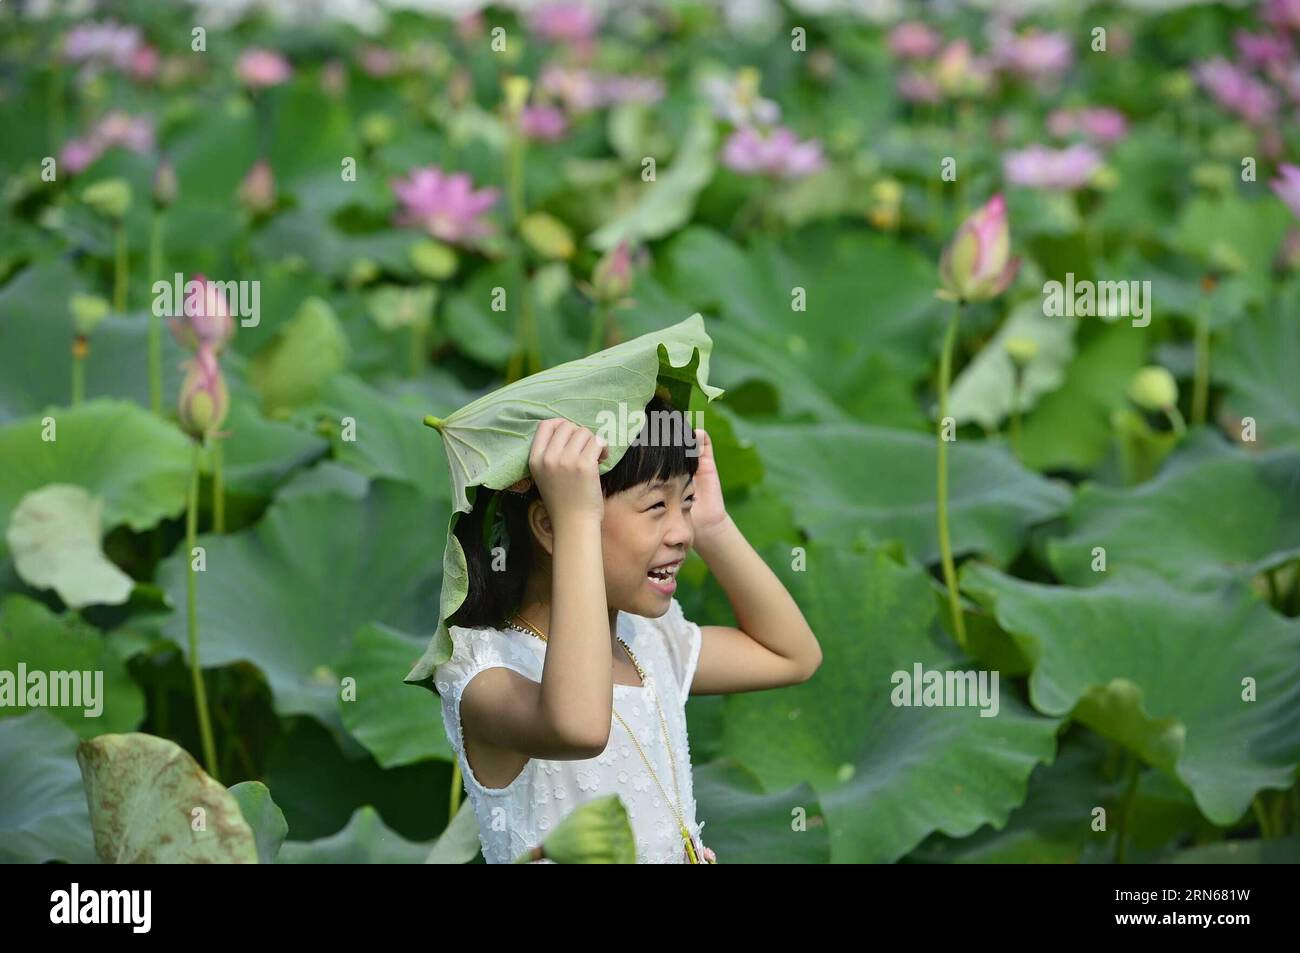 Un bambino mette una foglia di loto sulla testa nel villaggio Yaoxi della contea di Guangchang, nella provincia del Jiangxi della Cina orientale, 14 luglio 2015. Yaoxi Village, che ha più di 1.300 anni di storia nella piantagione di loto, ha 90.000 mu (6.000 ettari) di area di impianto con produzione annuale in grado di raggiungere 540 milioni di yuan (87 milioni di dollari USA). (lfj) CHINA-JIANGXI-YAOXI-LOTUS (CN) ZhouxMi PUBLICATIONxNOTxINxCHN un bambino mette una foglia di loto SULLA testa nel villaggio di Yaoxi nella contea di Guangchang nella provincia di Jiangxi della Cina orientale 14 luglio 2015 il villaggio di Yaoxi che ha più di 1 300 anni di storia nella piantagione di Lotus ne ha 90 0 Foto Stock